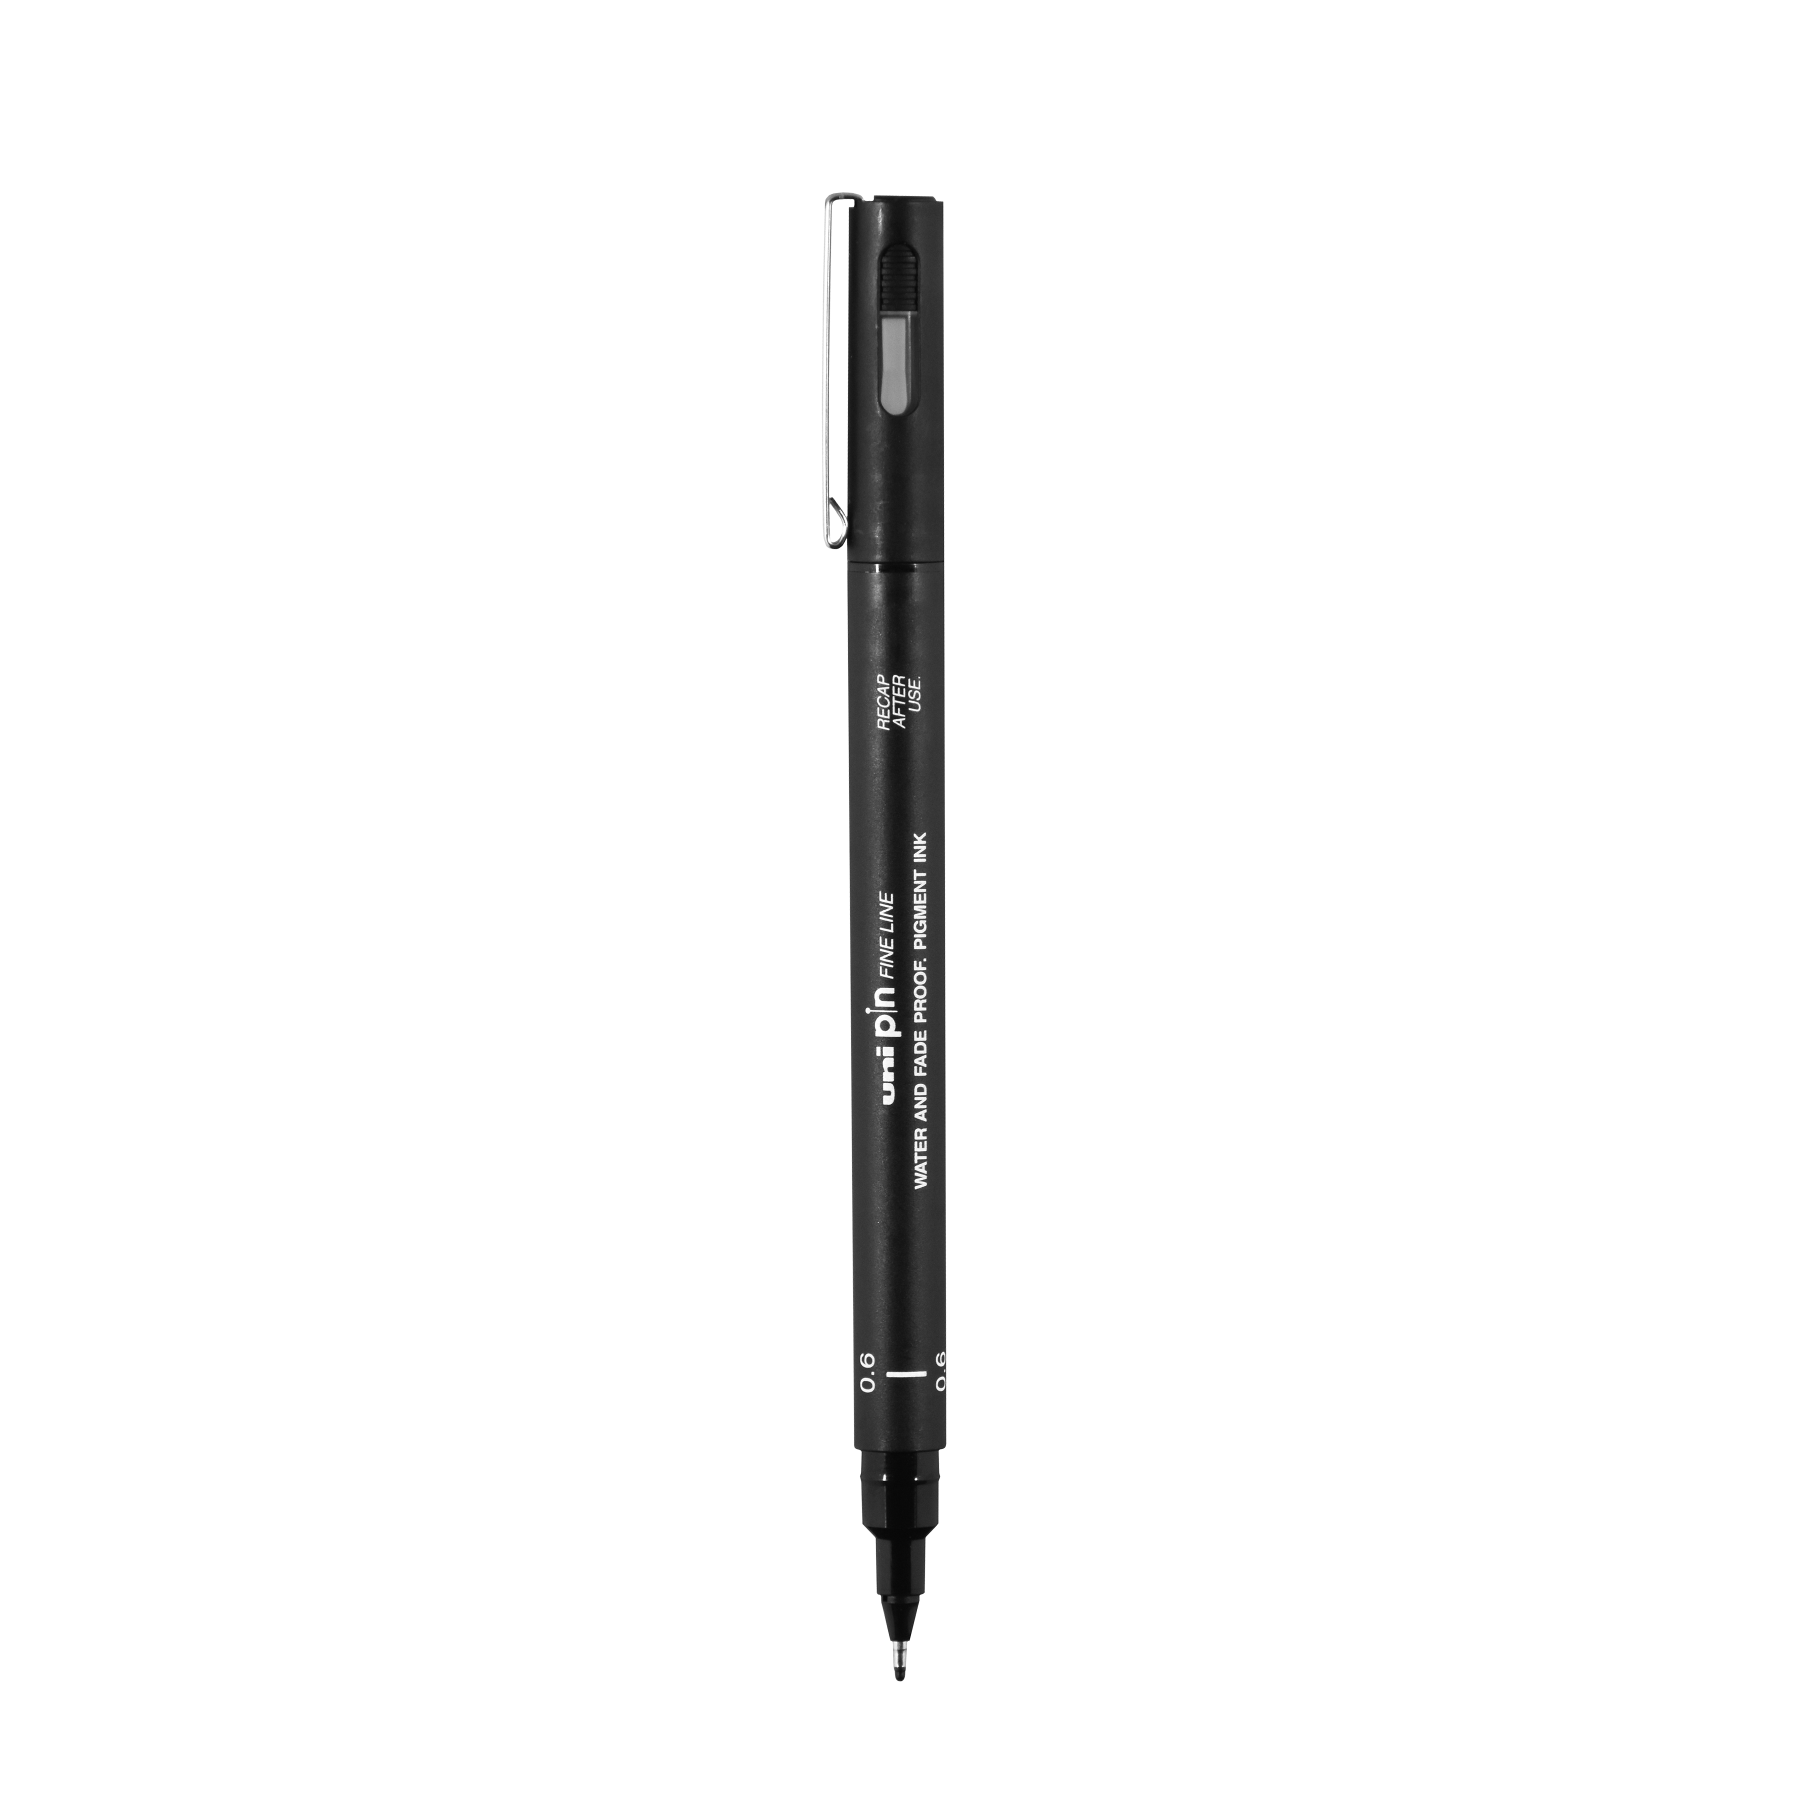 Uni Pin Fine Line Pens 6 Set, Black 